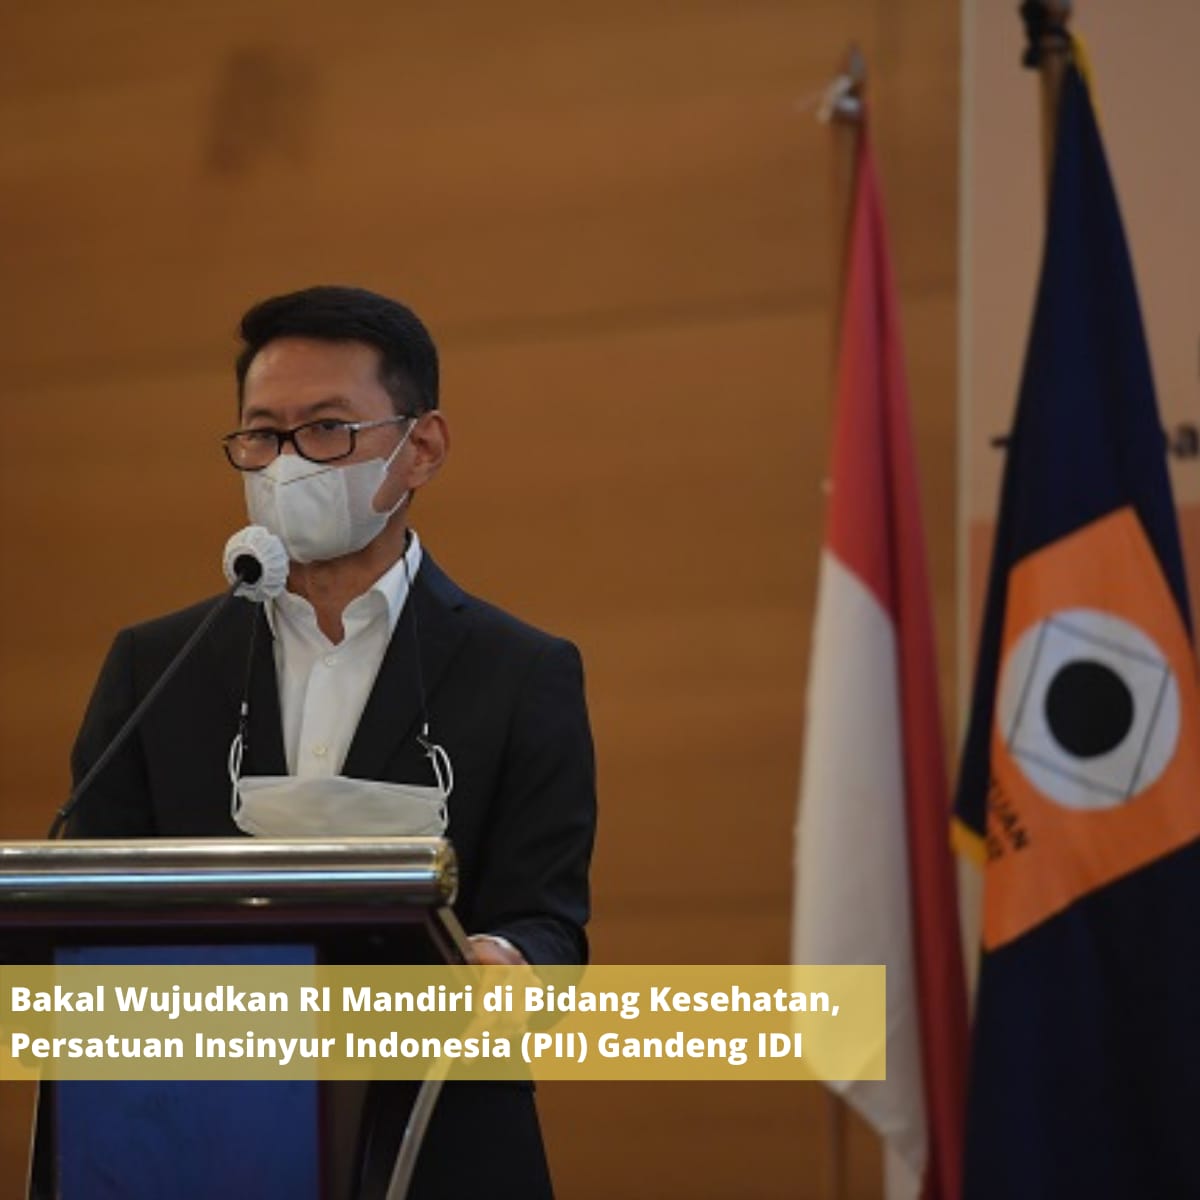 Bakal Wujudkan RI Mandiri di Bidang Kesehatan, Persatuan Insinyur Indonesia (PII) Gandeng IDI